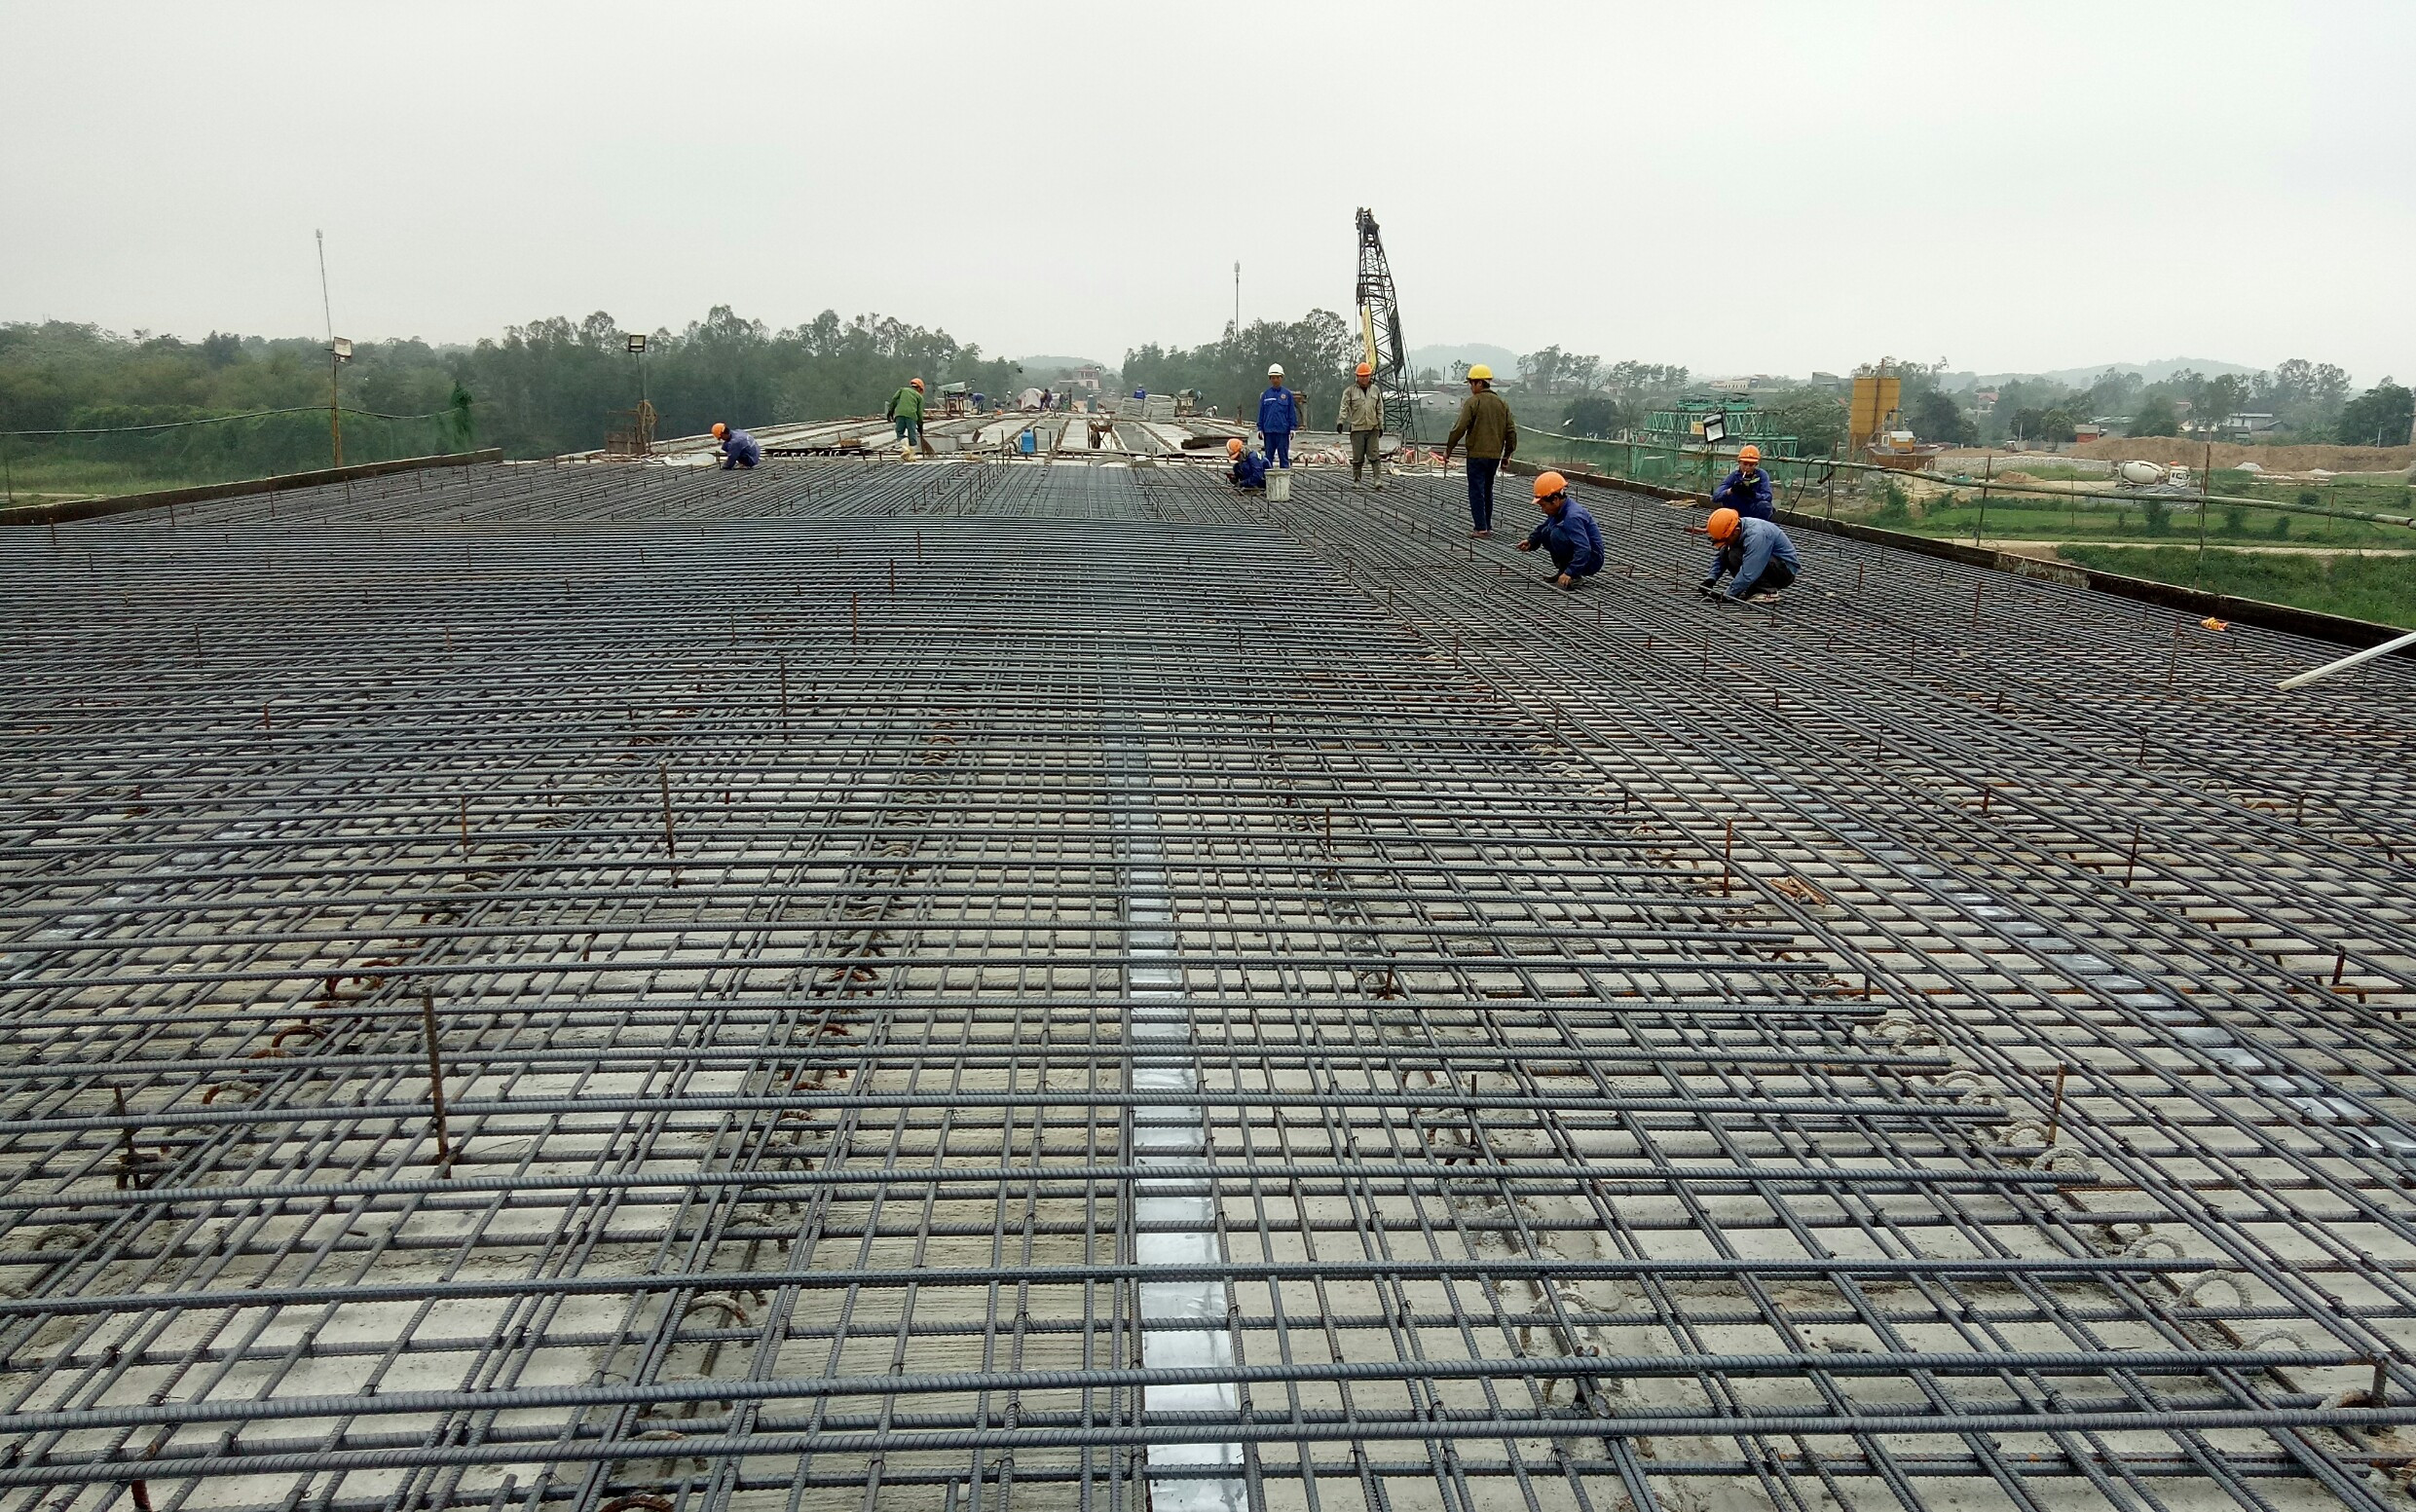 Đơn vị thi công đang tiến hành đan thép để đổ bê tông mặt cầu.Ảnh: Quang Huy